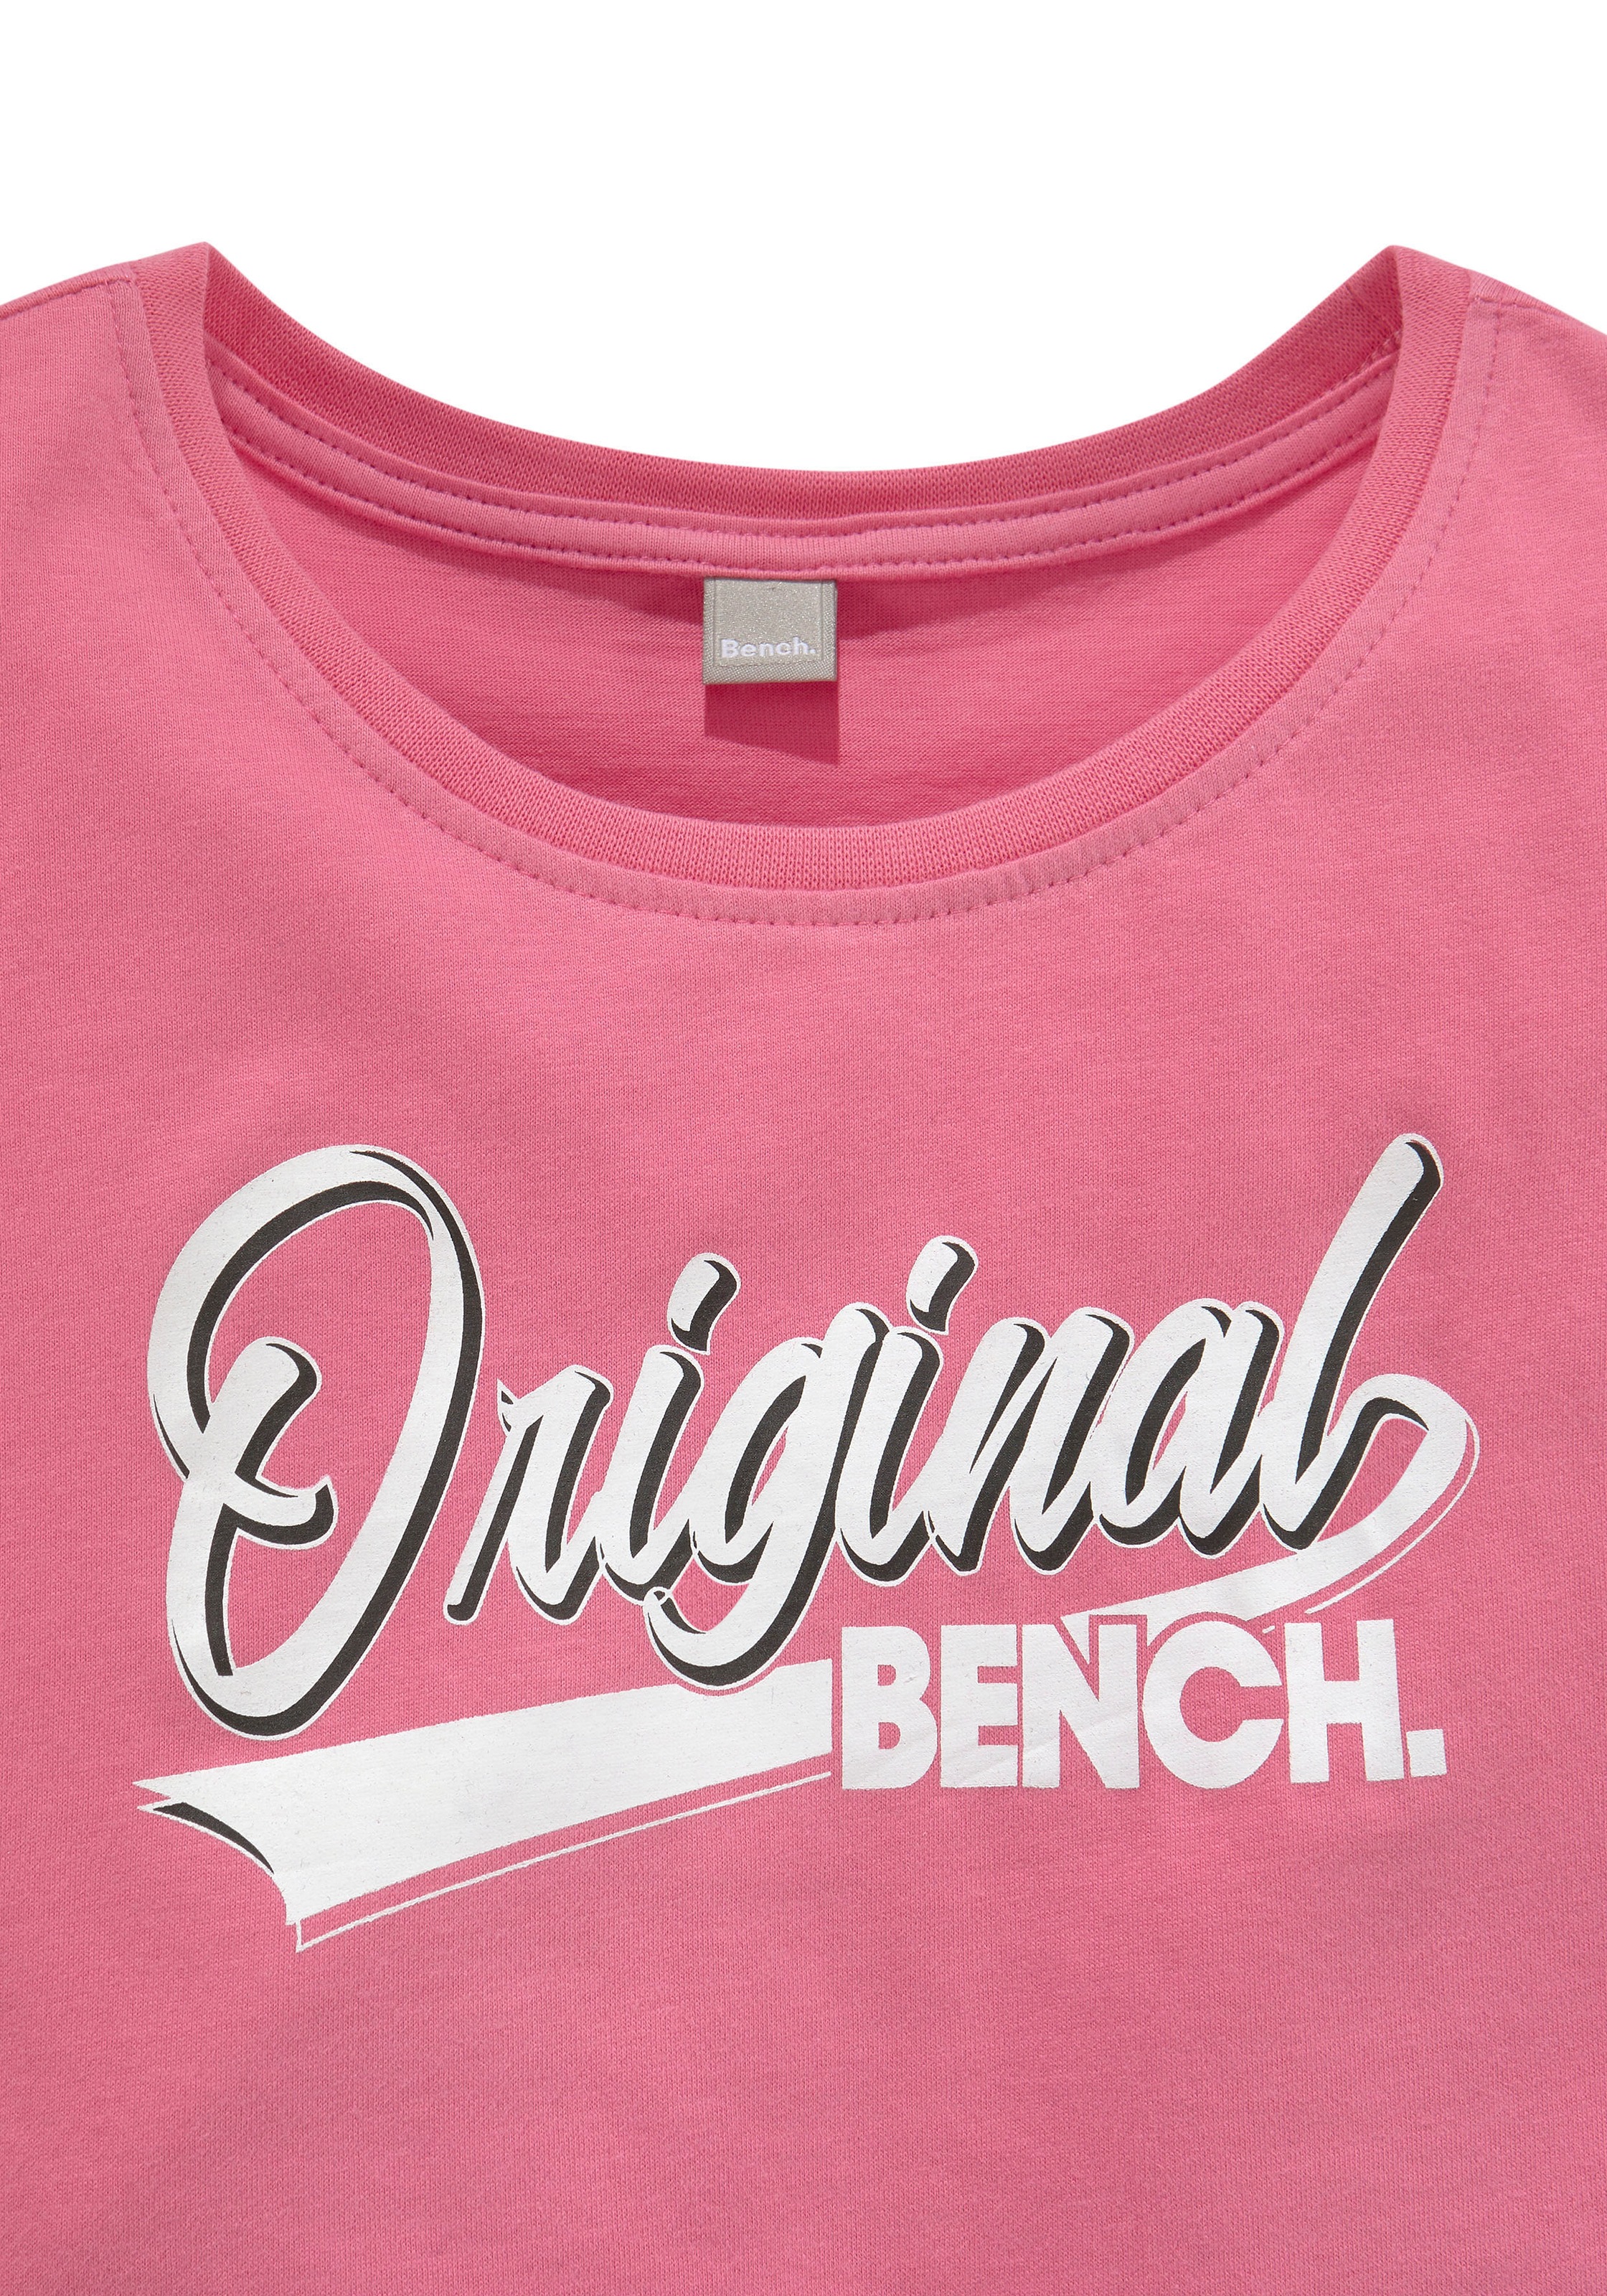 geschnitten Acheter ✌ T-Shirt, en ligne Bench. locker